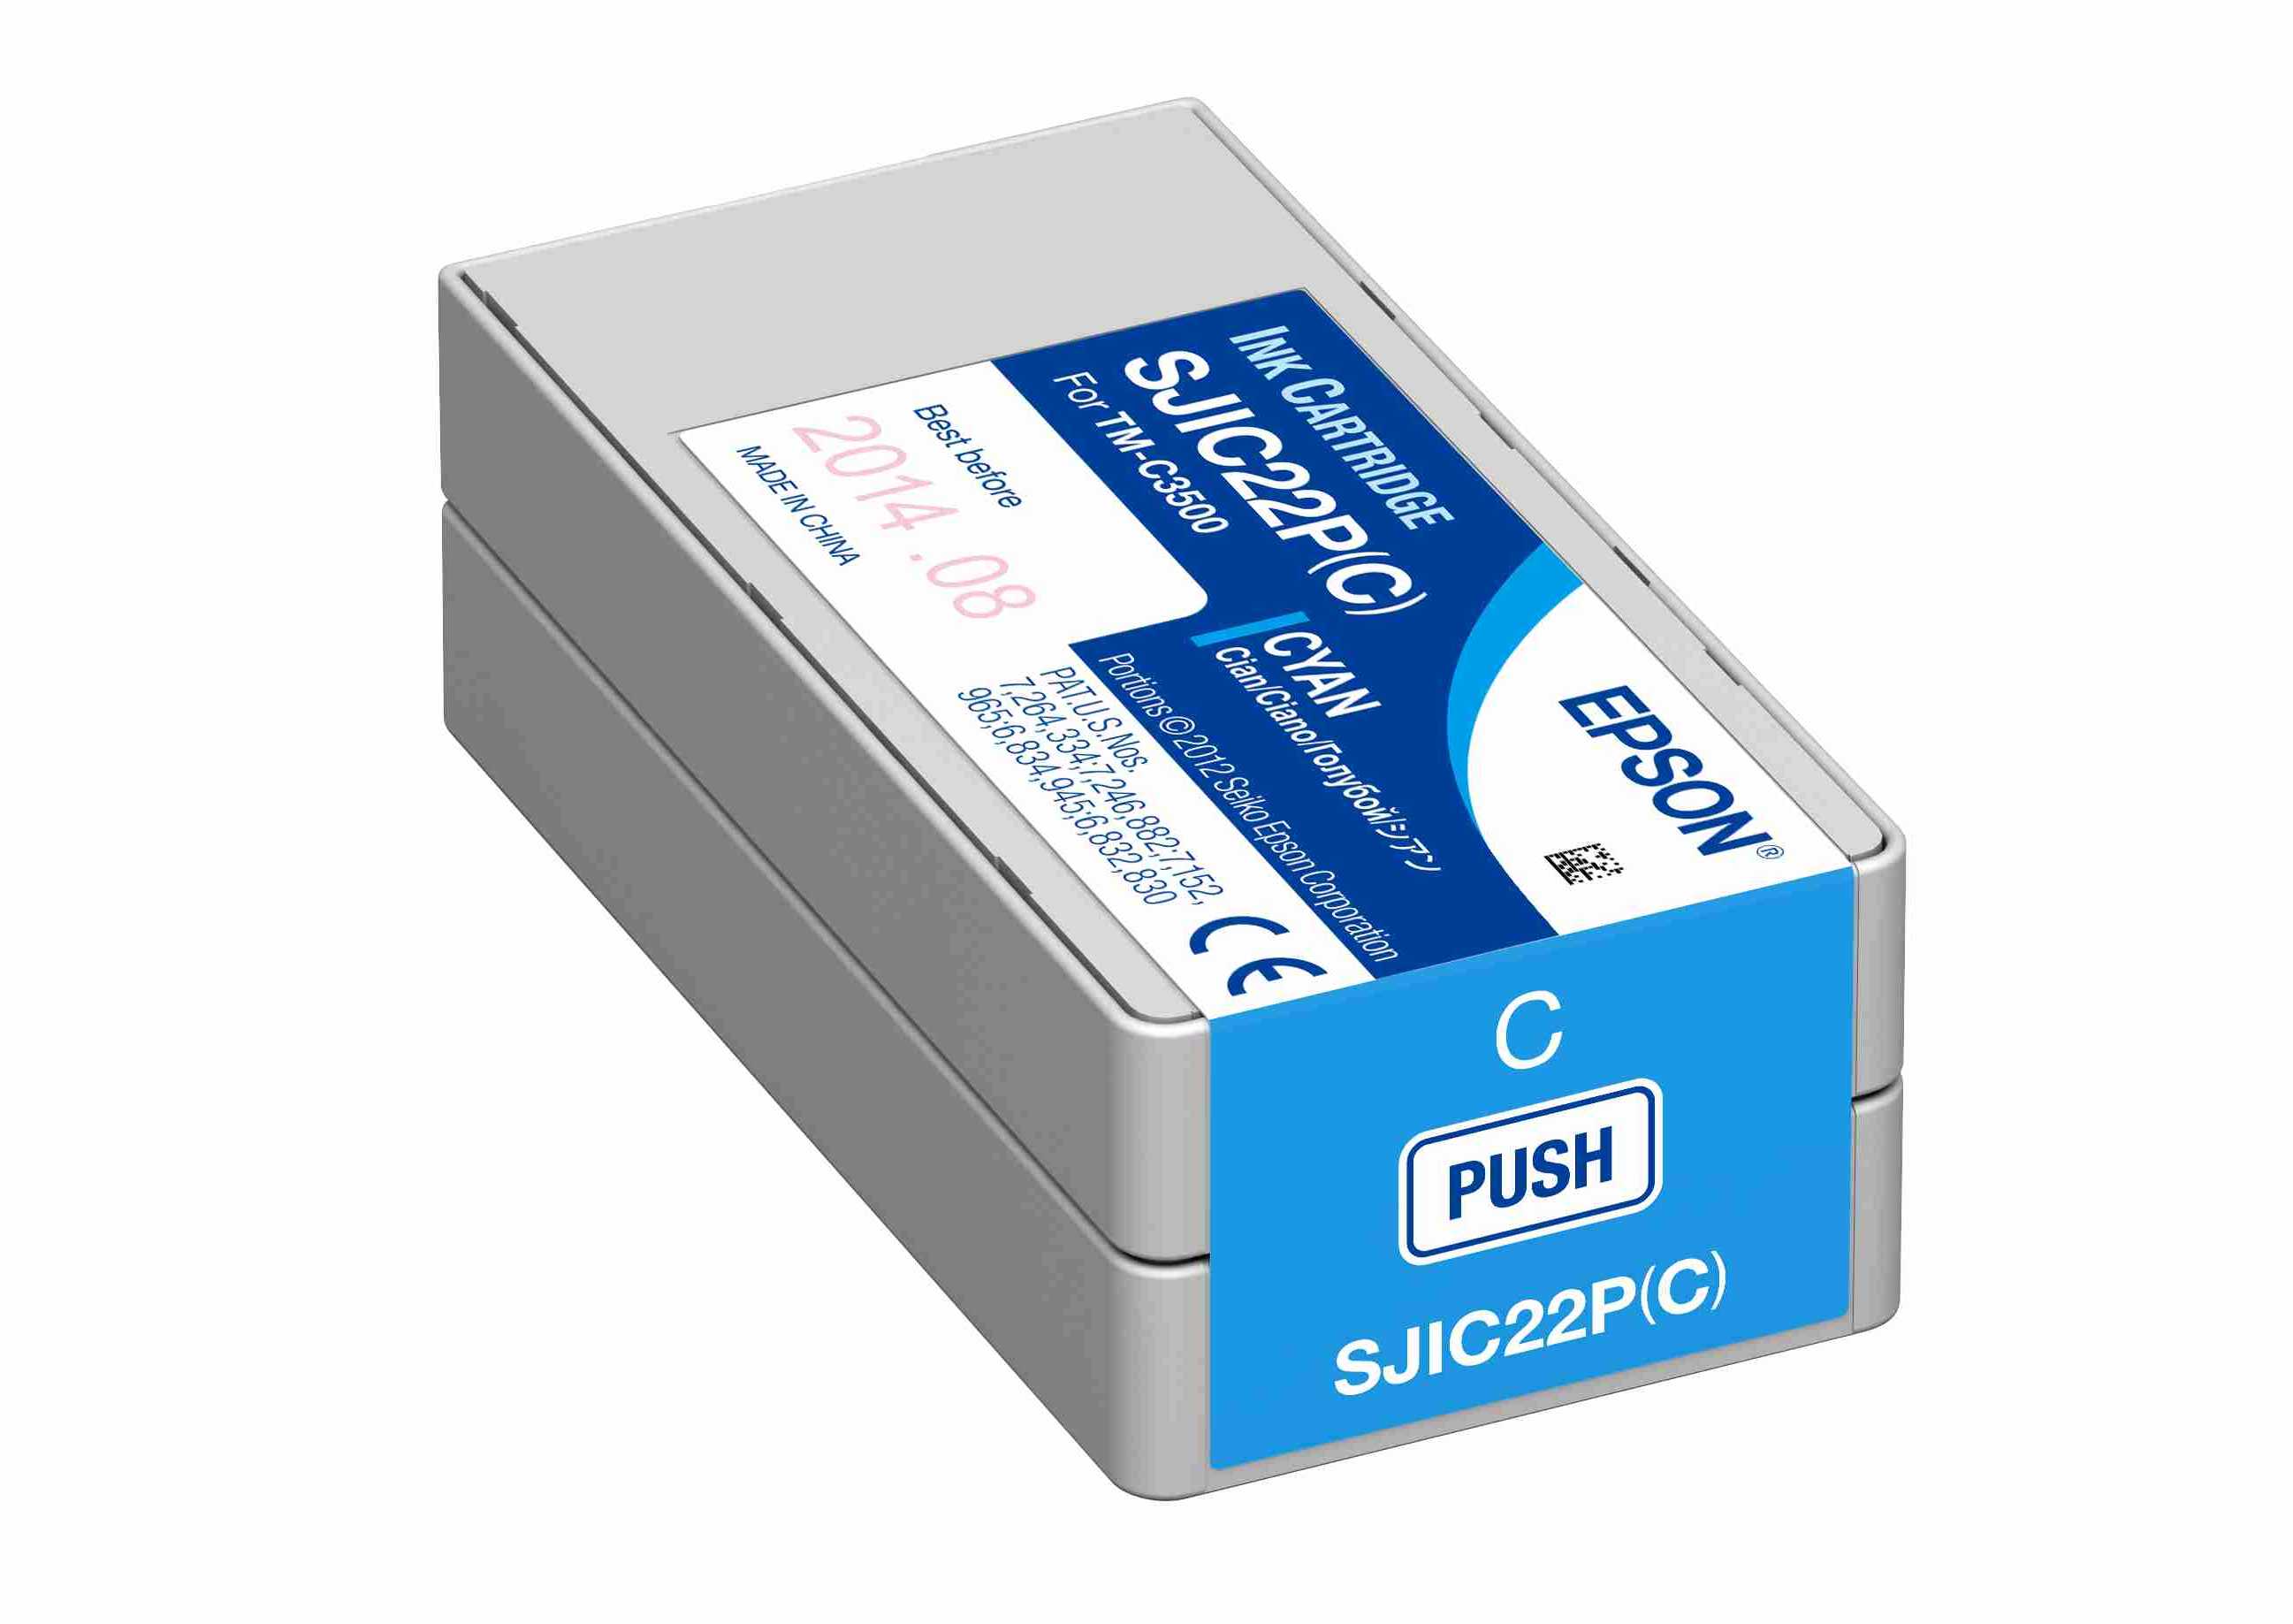 Kartusche Epson SJIC22P(C) cyan für C3500